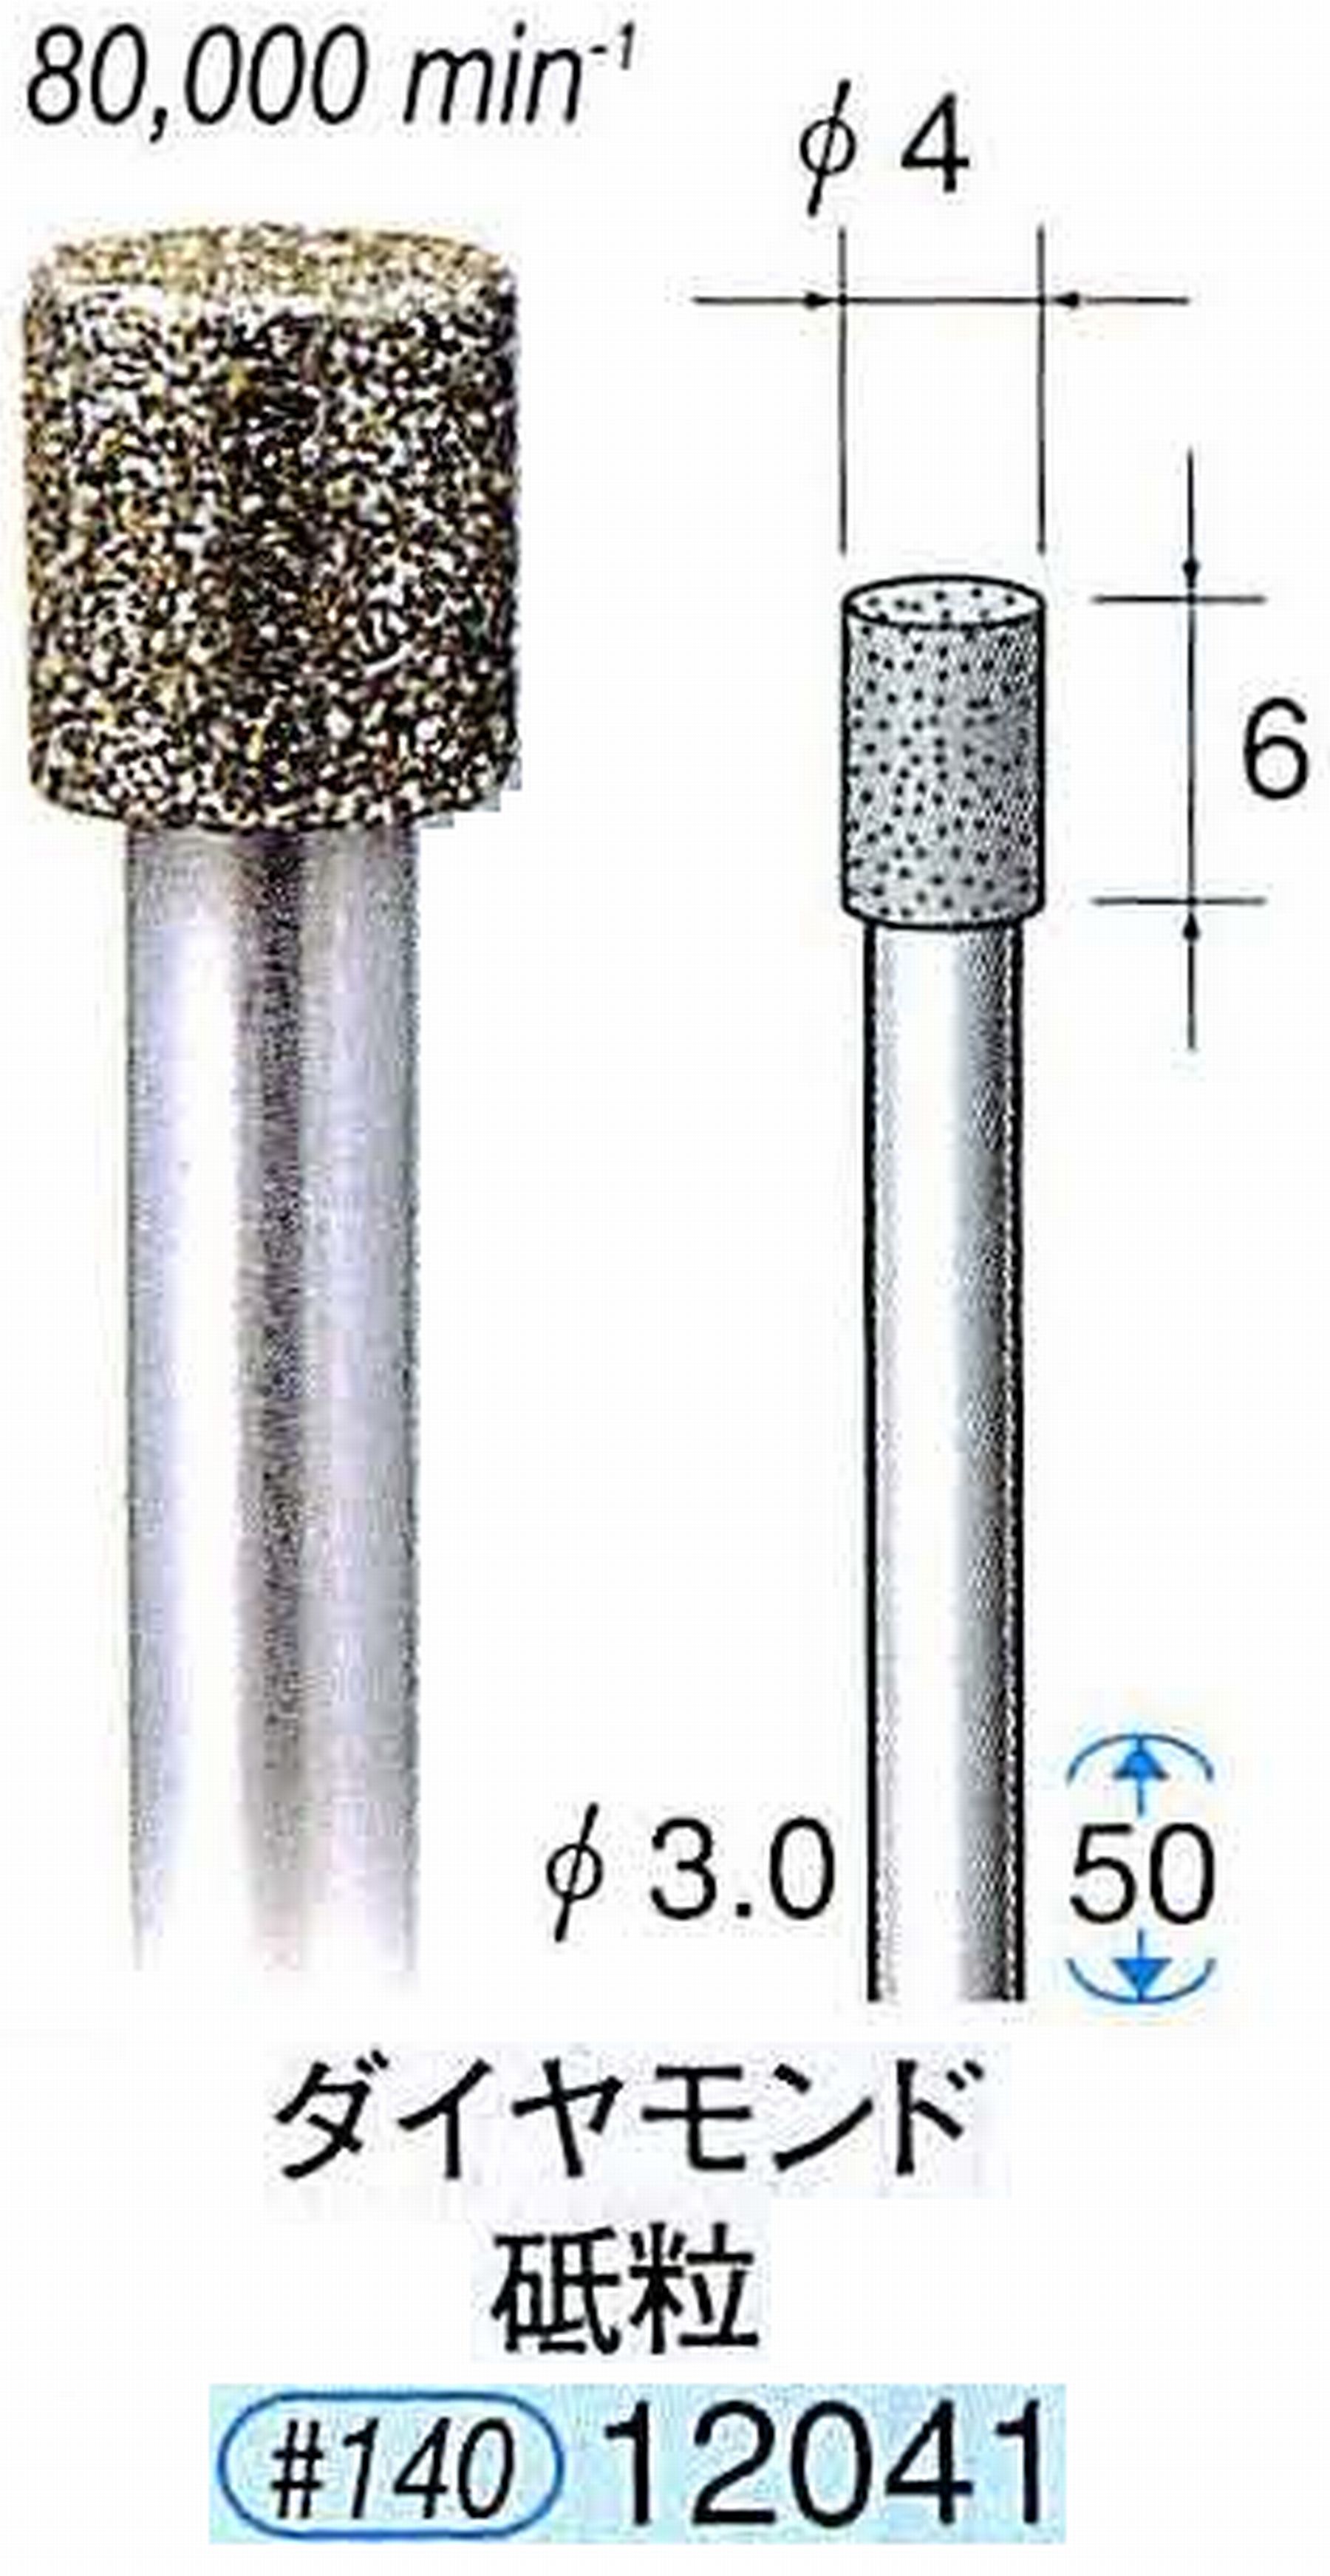 ナカニシ/NAKANISHI 電着ダイヤモンド ダイヤモンド砥粒 軸径(シャンク)φ3.0mm 12041